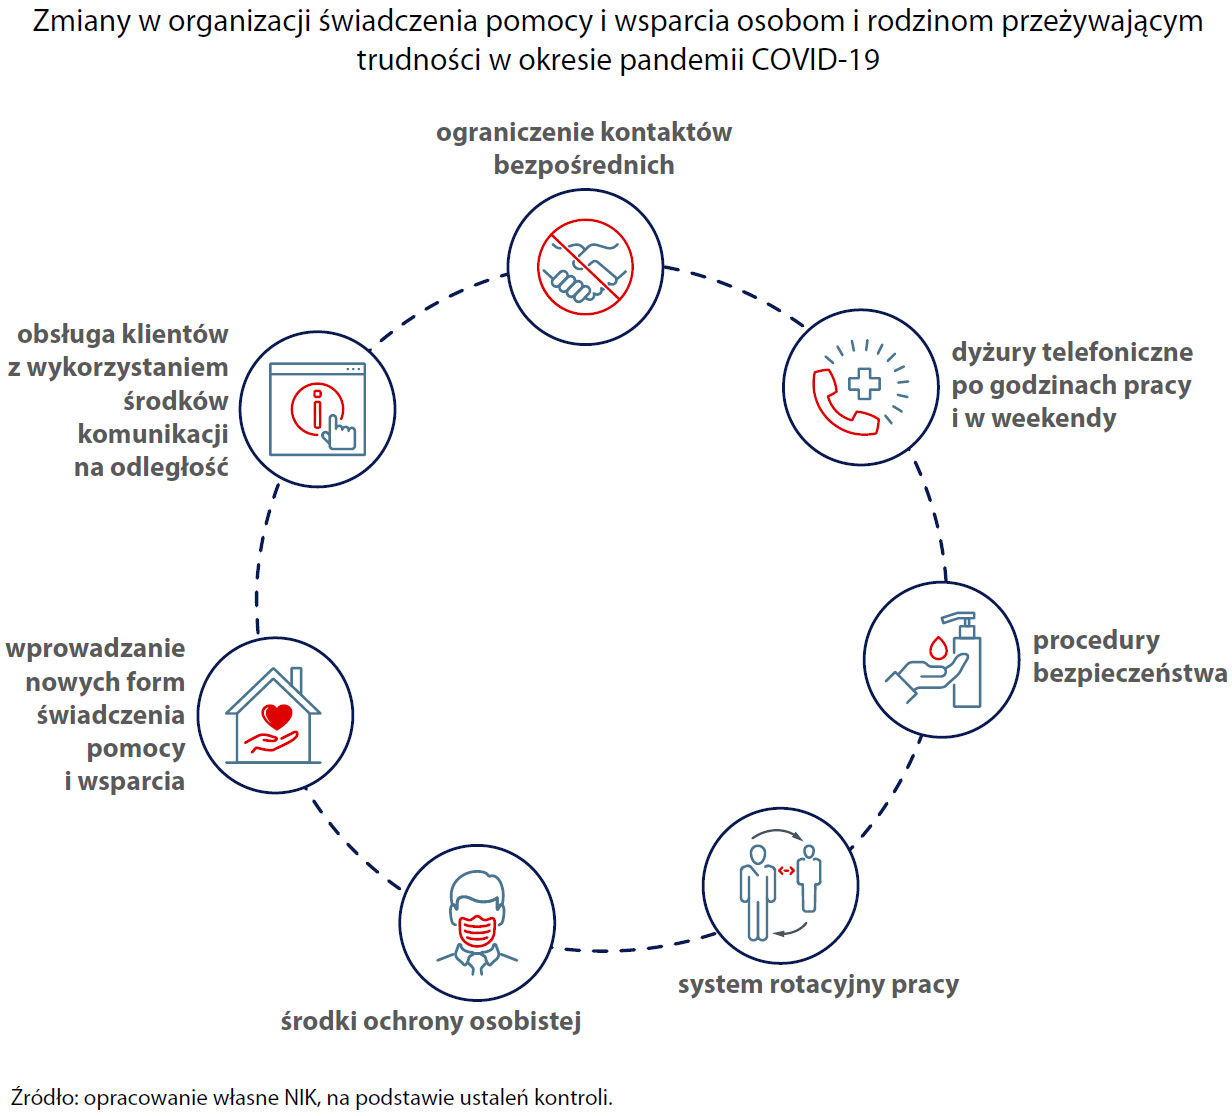 Zmiany w organizacji świadczenia pomocy i wsparcia osobom i rodzinom przeżywającym trudności w okresie pandemii COVID-19 (opis grafiki poniżej)